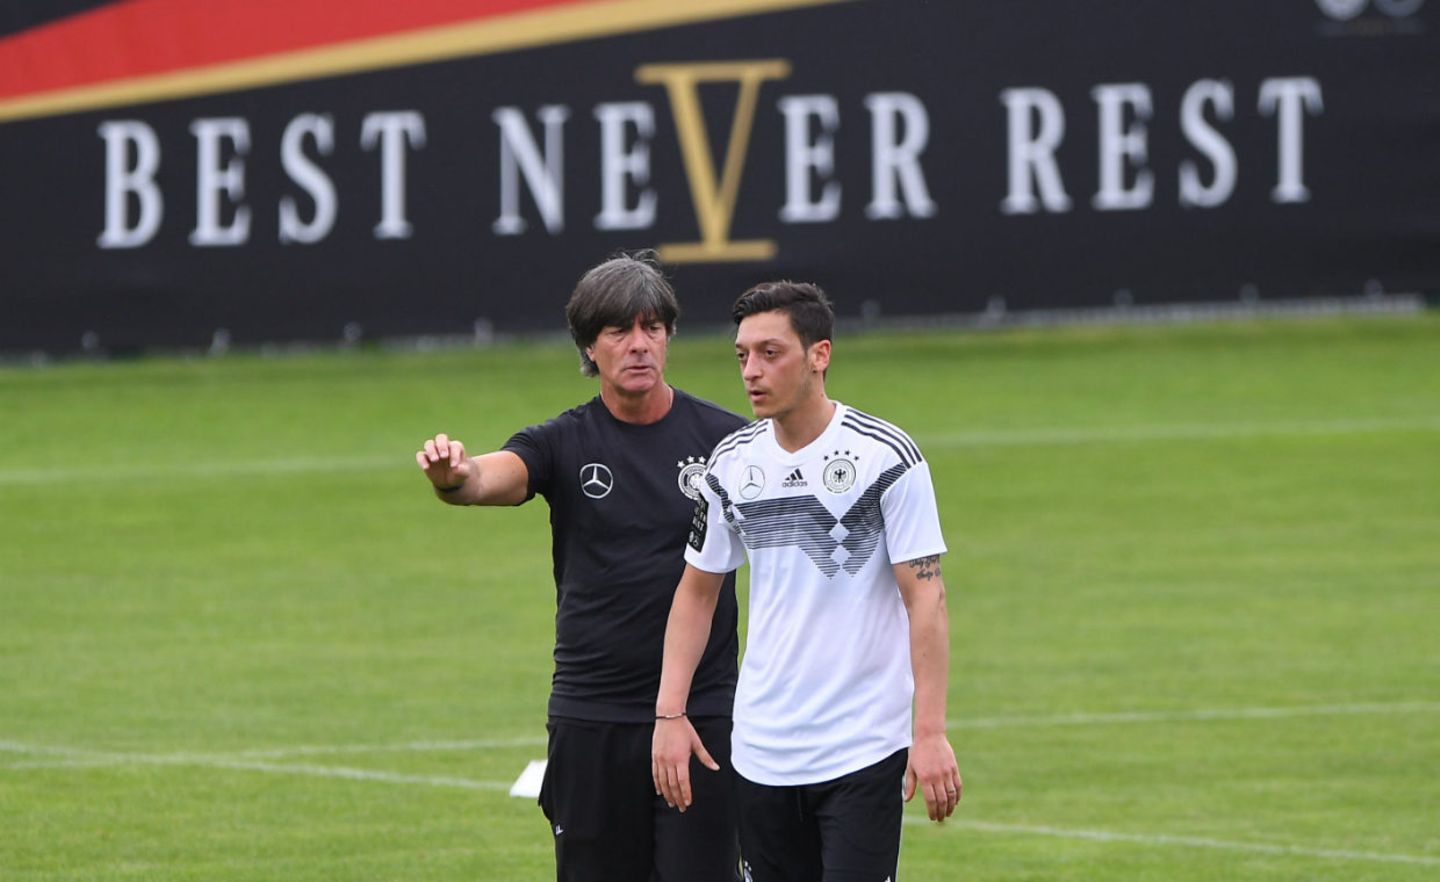 Nicht nur Bundestrainer Joachim Löw und Mesut Özil hatten über Jahre ein enges Verhältnis – sondern auch ihre Berater